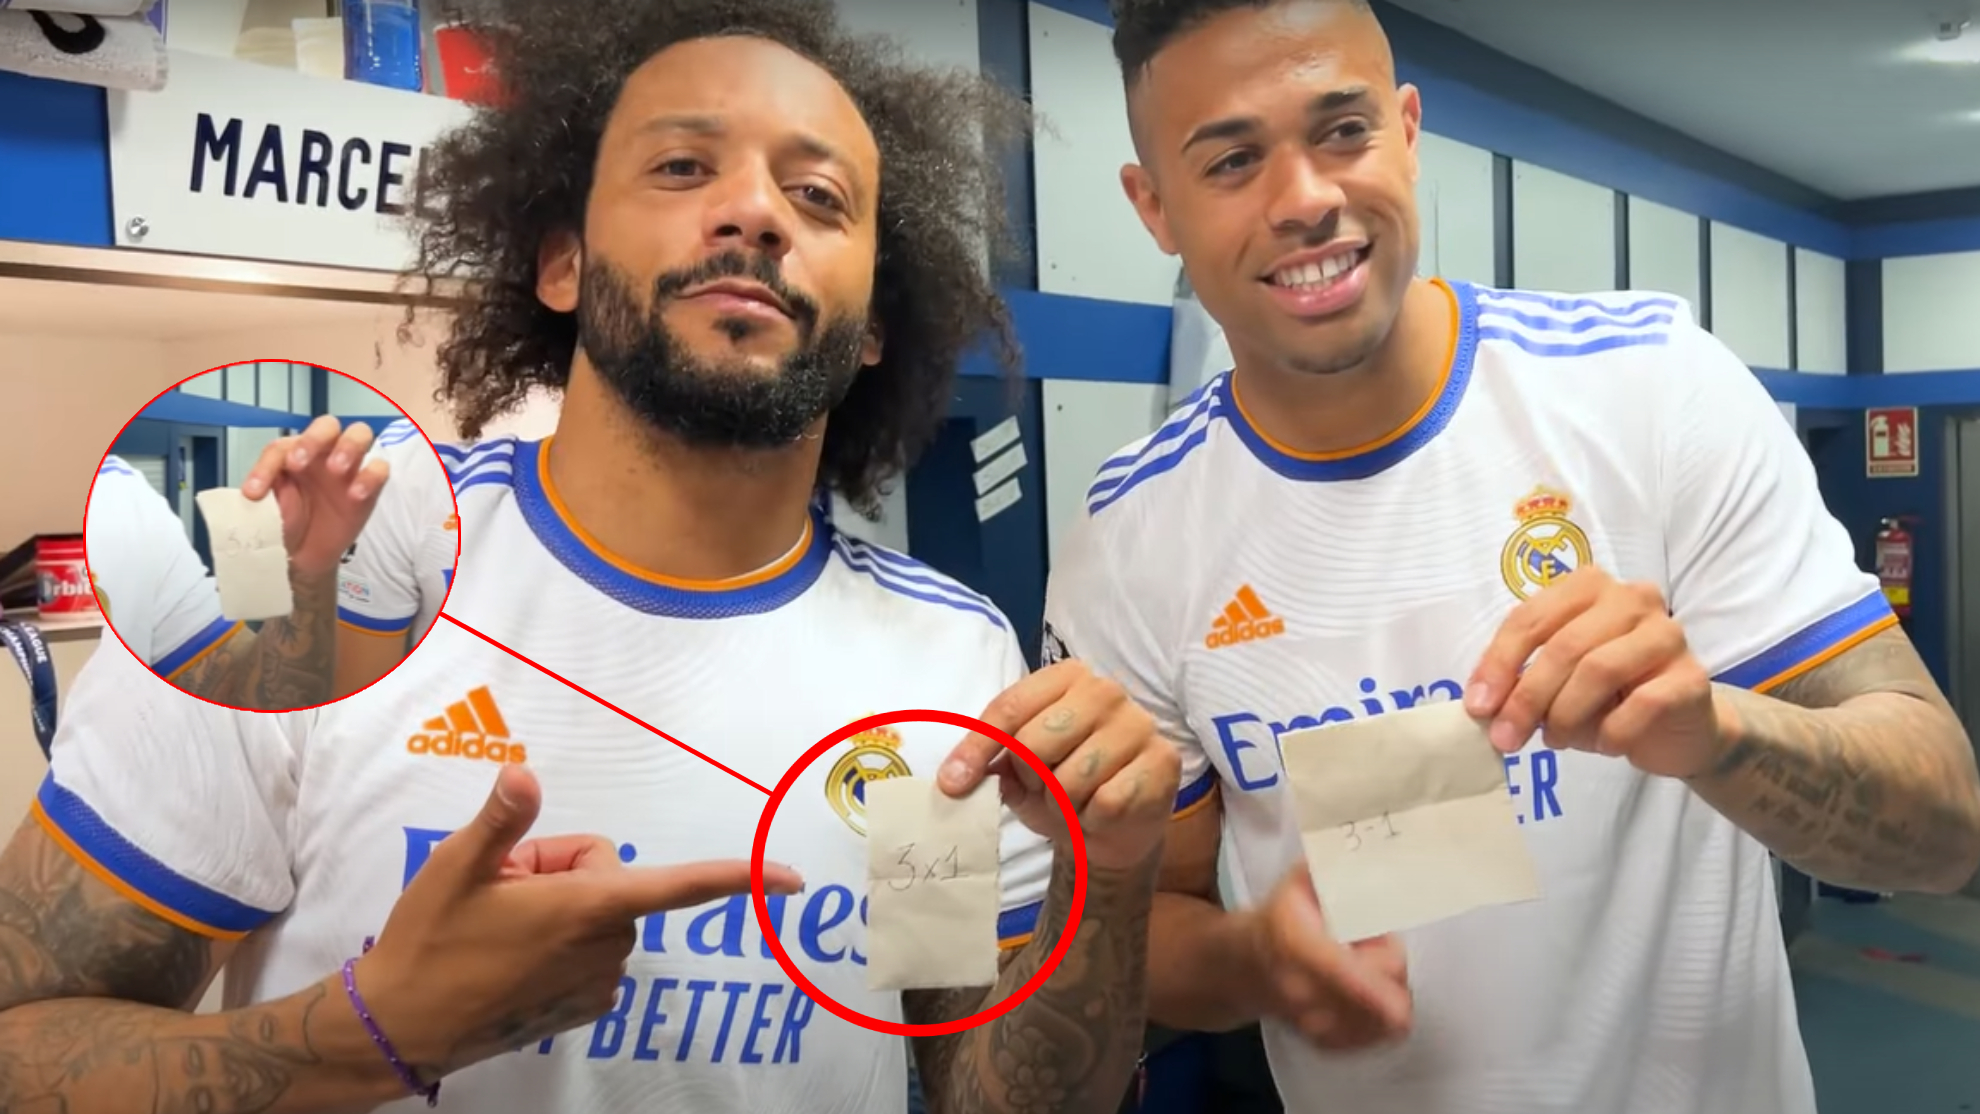 La historia de los papelitos en el vestuario del Madrid: "Los jugadores hicimos una porra y..."